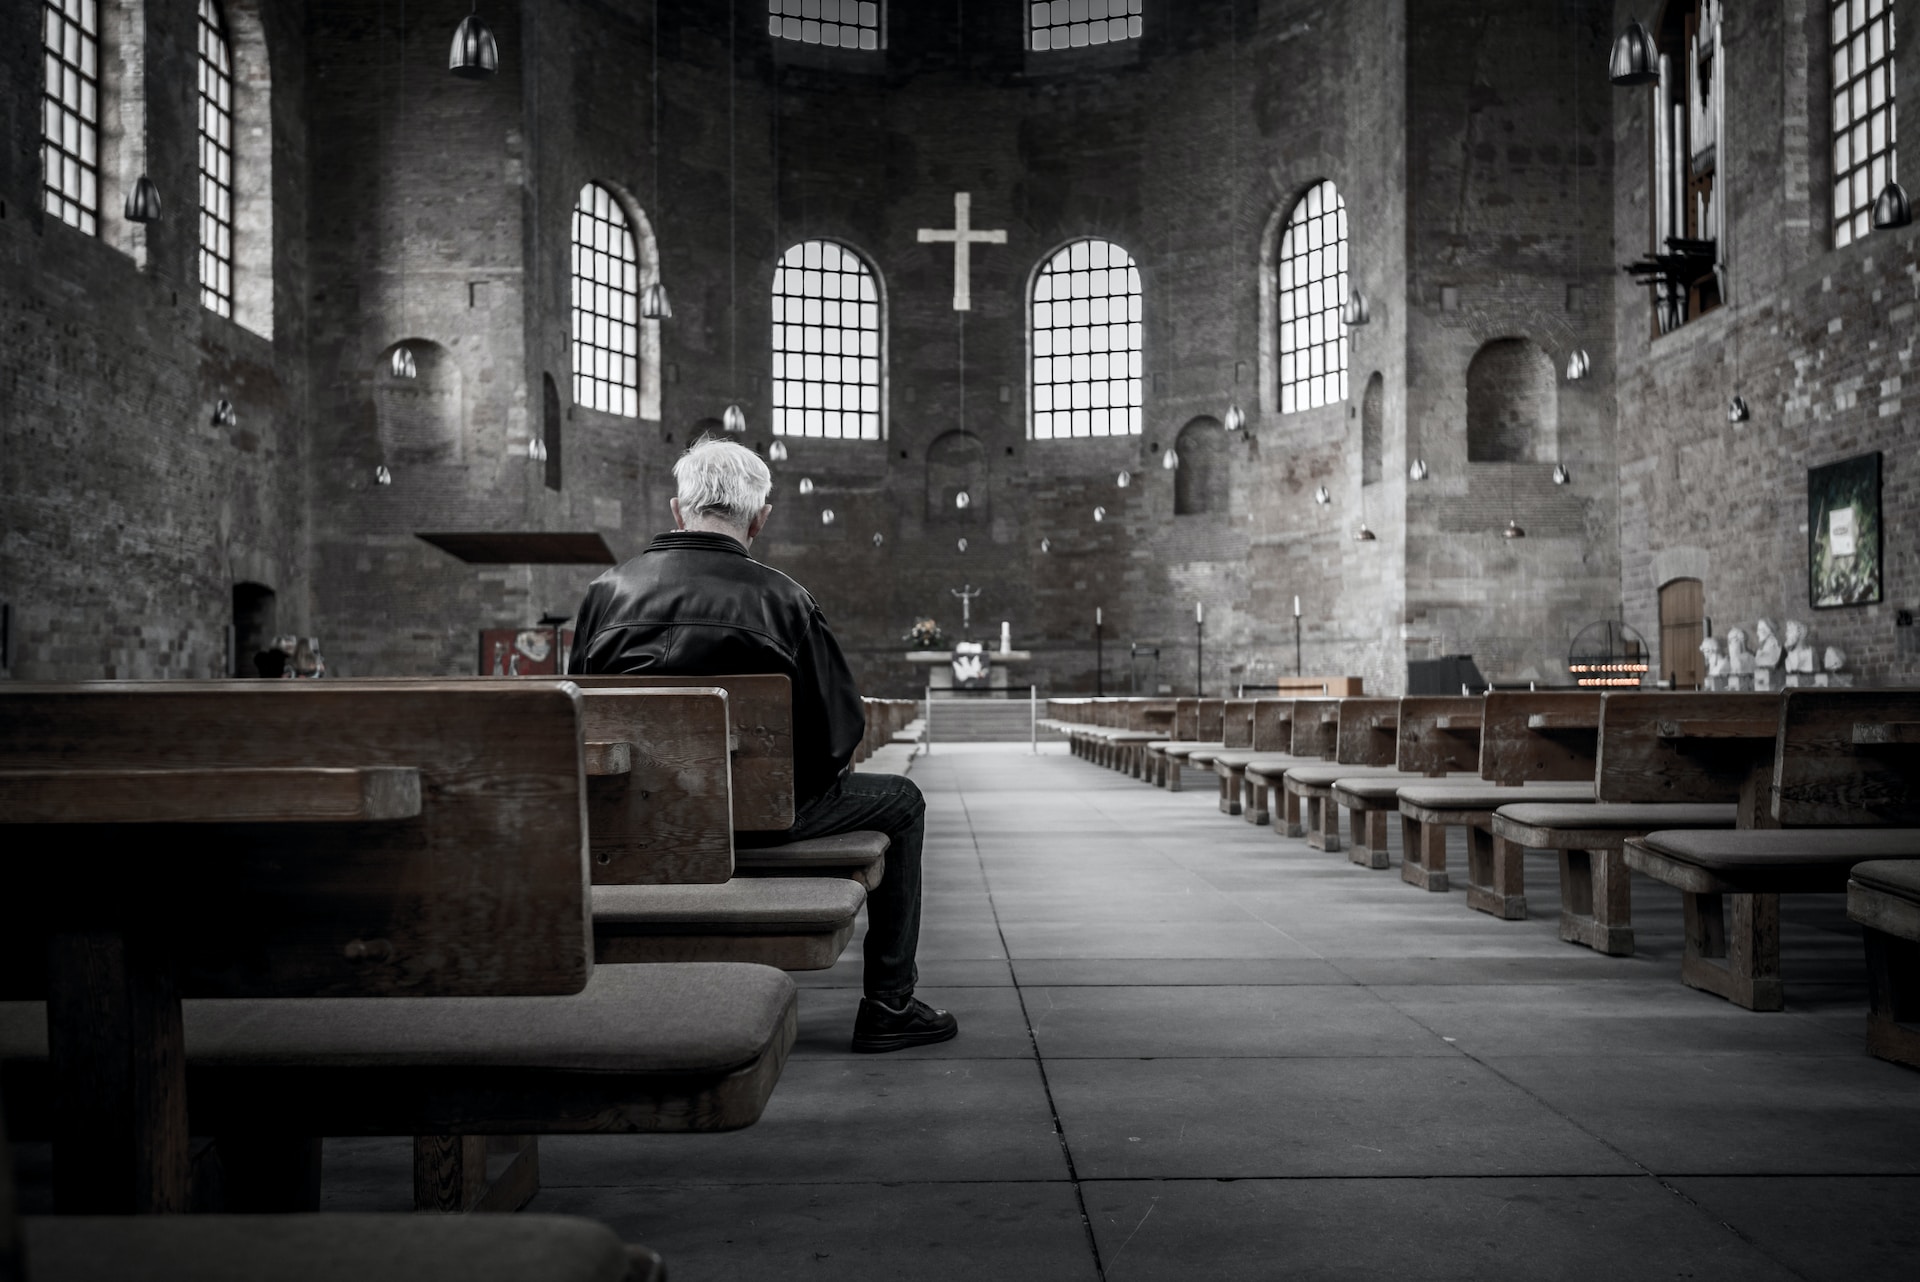 Qué forma adoptará el cristianismo del futuro? - La Civiltà Cattolica